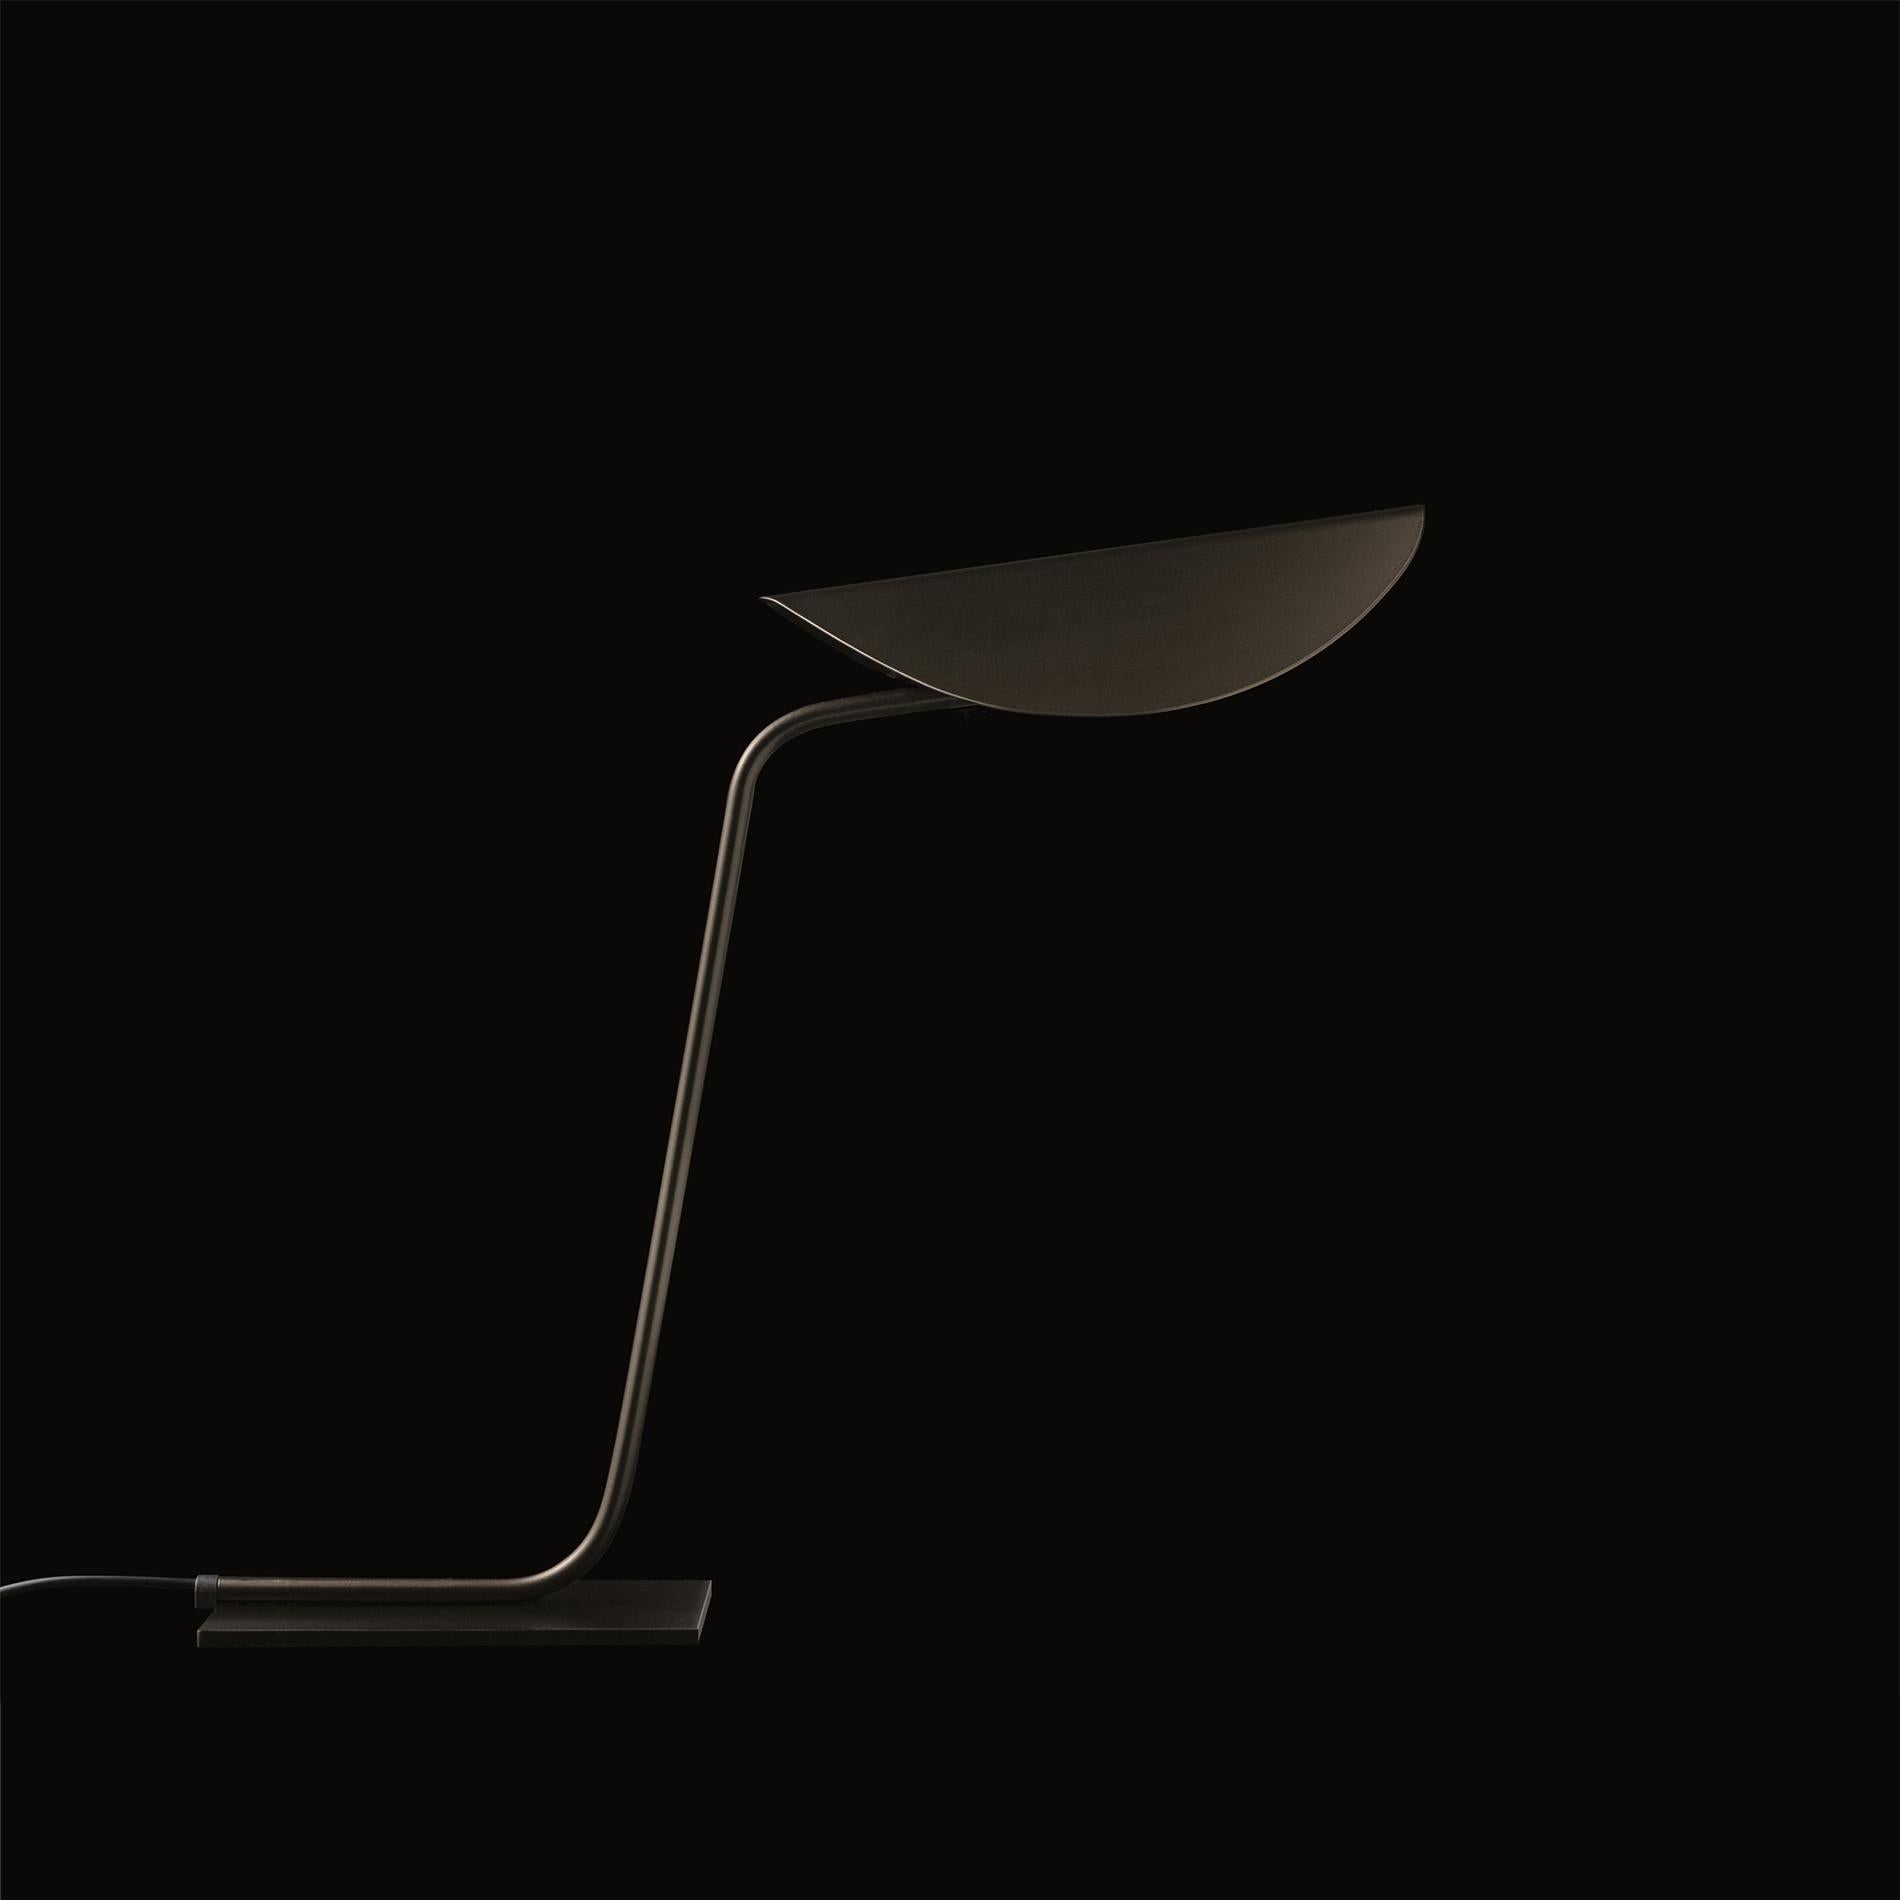 Lampe à poser 'Plume' conçue par Christophe Pillet en 2017.
Lampe de table à lumière indirecte en métal laqué. Structure tubulaire en métal courbé.
Fabriqué par Oluce, Italie.

Plume, conçue par Christophe Pillet, une famille de lampes composée